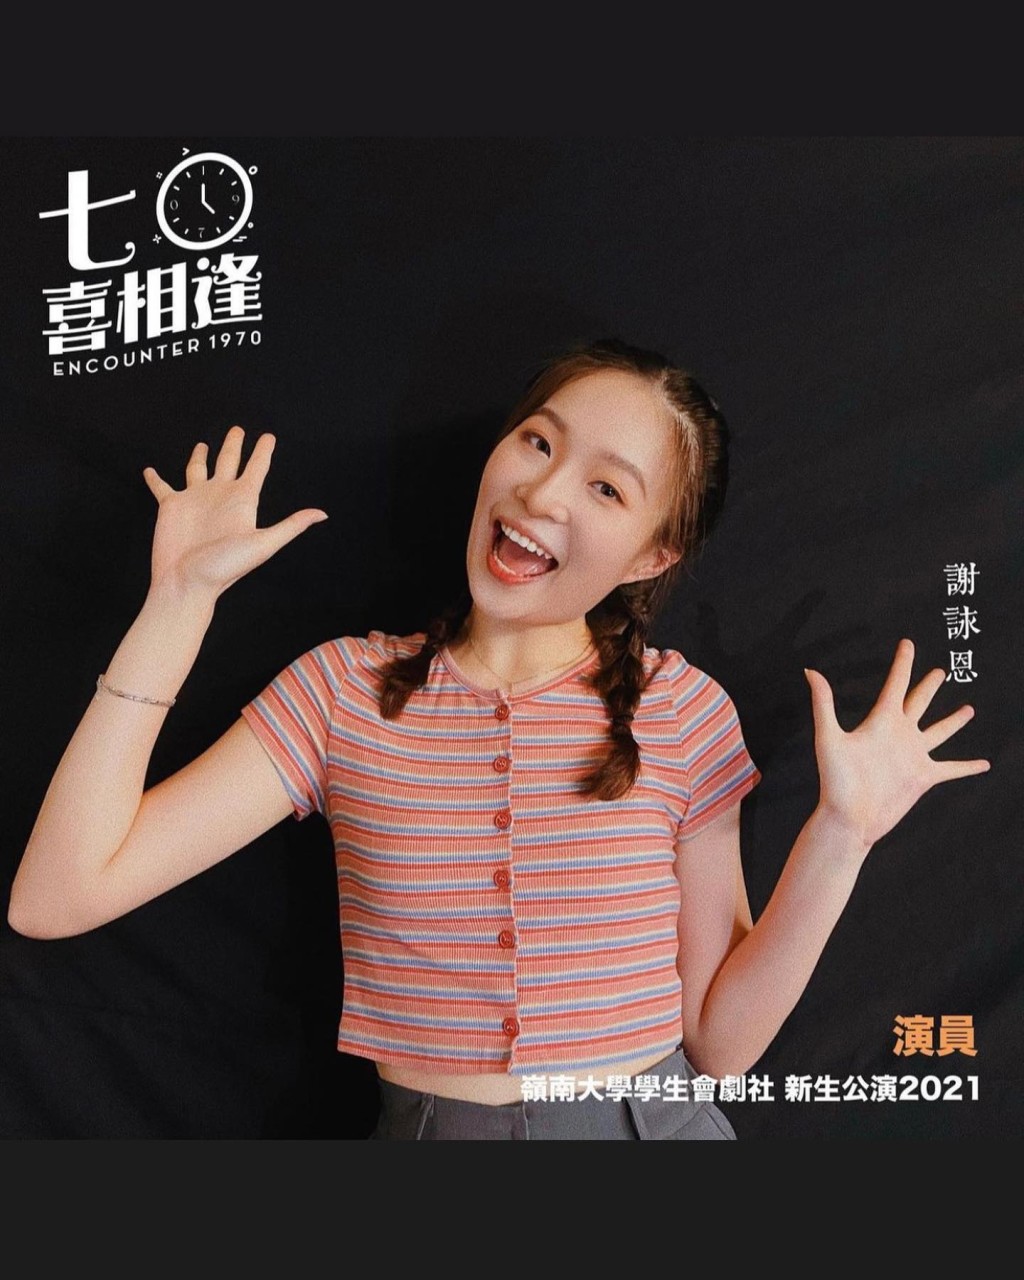 成功当选舞台剧《七〇喜相逢》的女主角「若晴」。